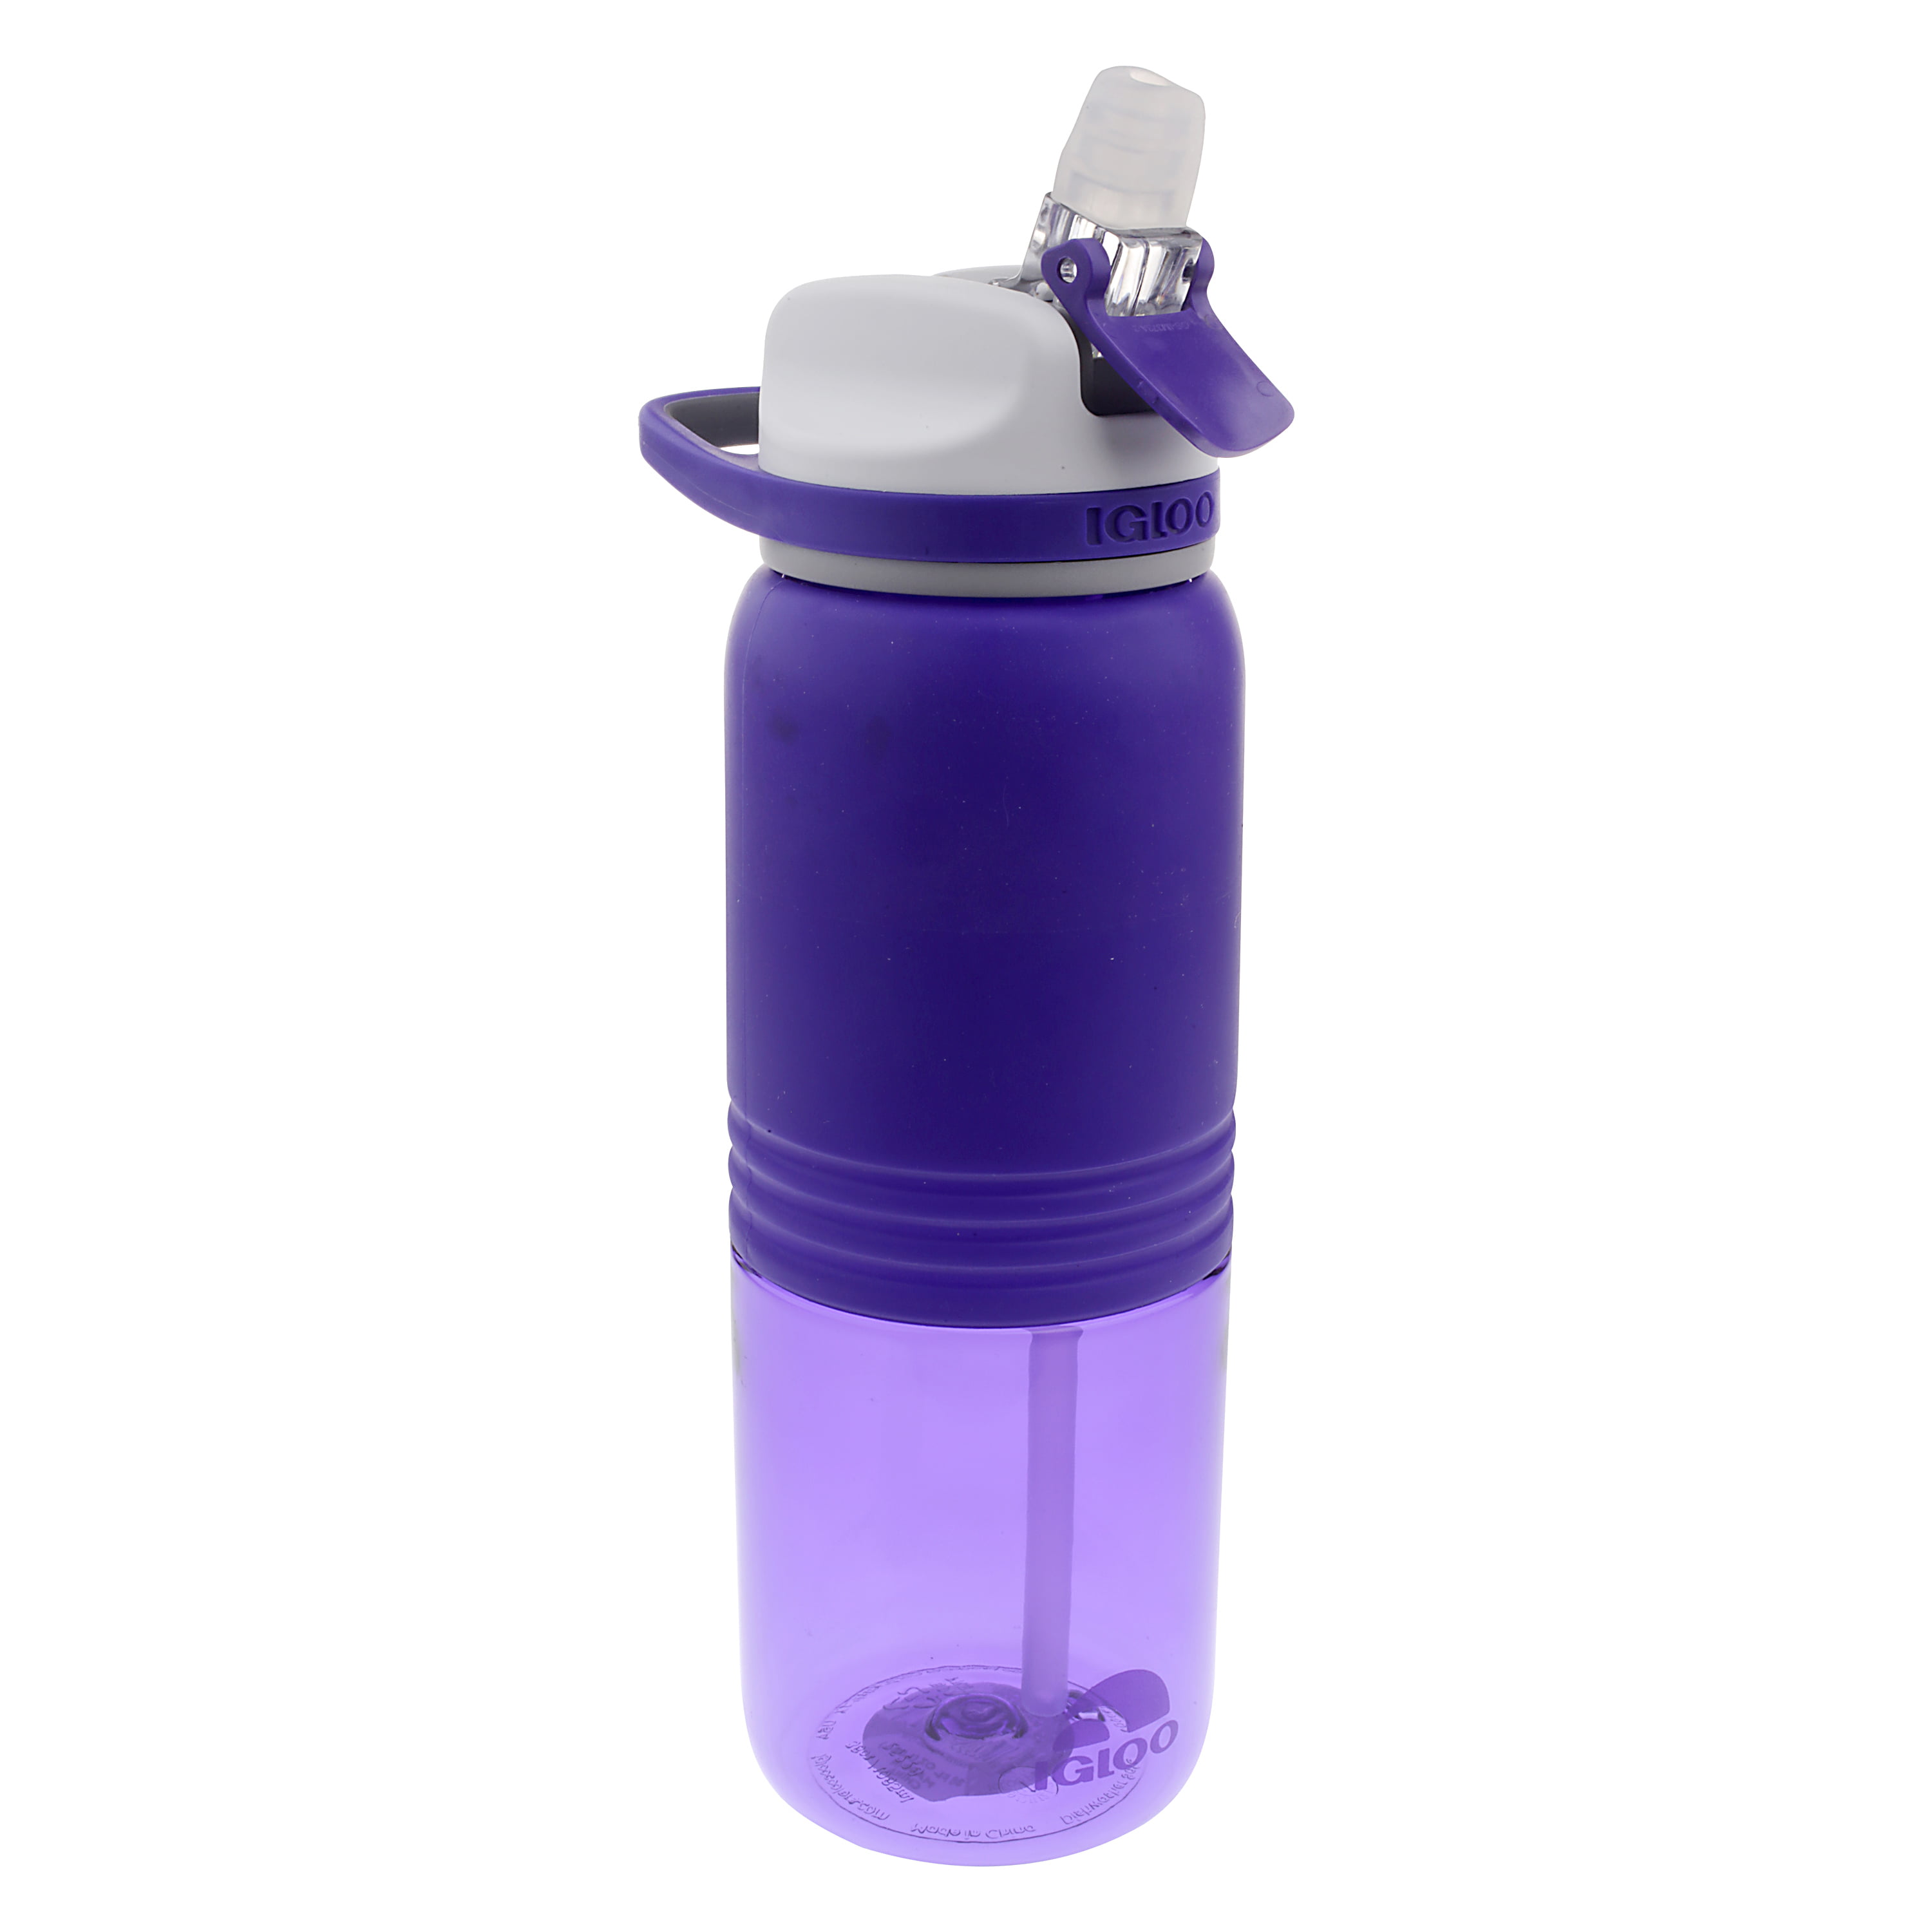 Igloo® Double Wall Vacuum Insulated Water Bottle - 36 oz.